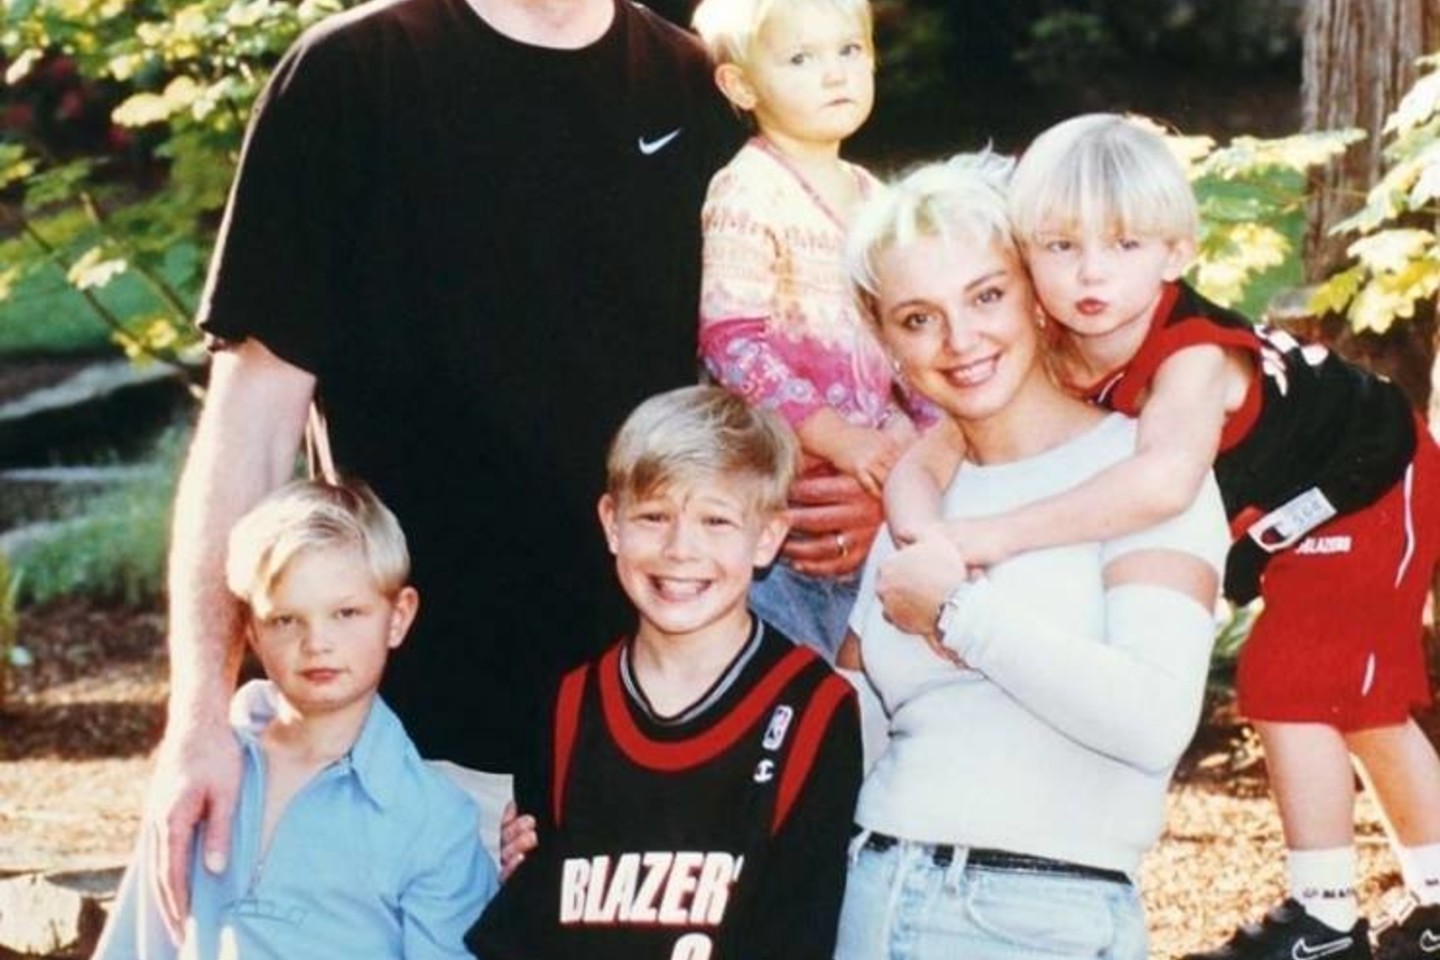 Lietuvos krepšinio federacijos prezidentas Arvydas Sabonis pasidalijo iki šiol mažai kur matytomis šeimos nuotraukomis.